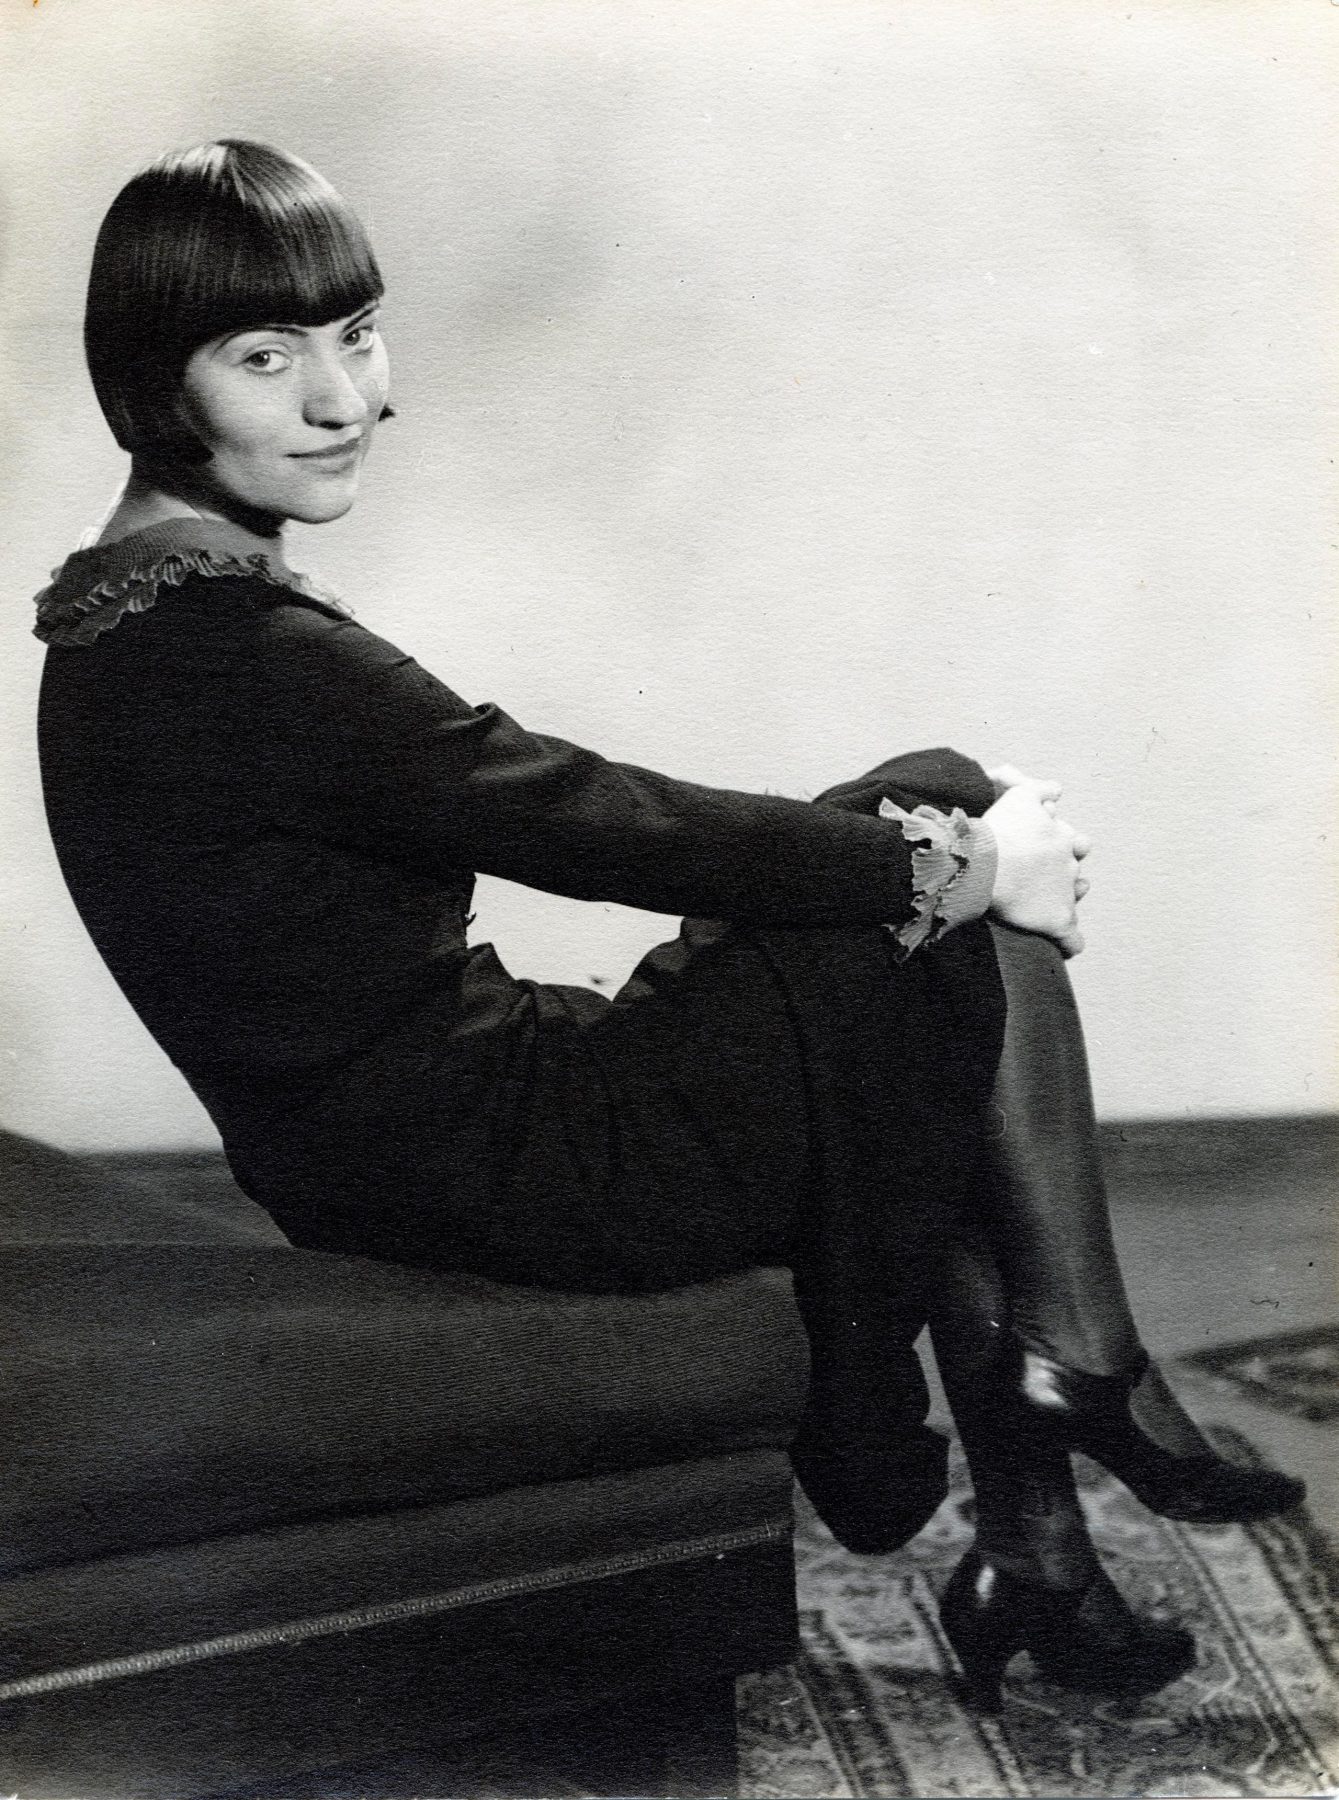 Schwarzweißfotografie einer jungen Frau mit Kurzhaarschnitt in einem Kleid, die sitzend und die Beine übereinander geschlage in die Kamera guckt